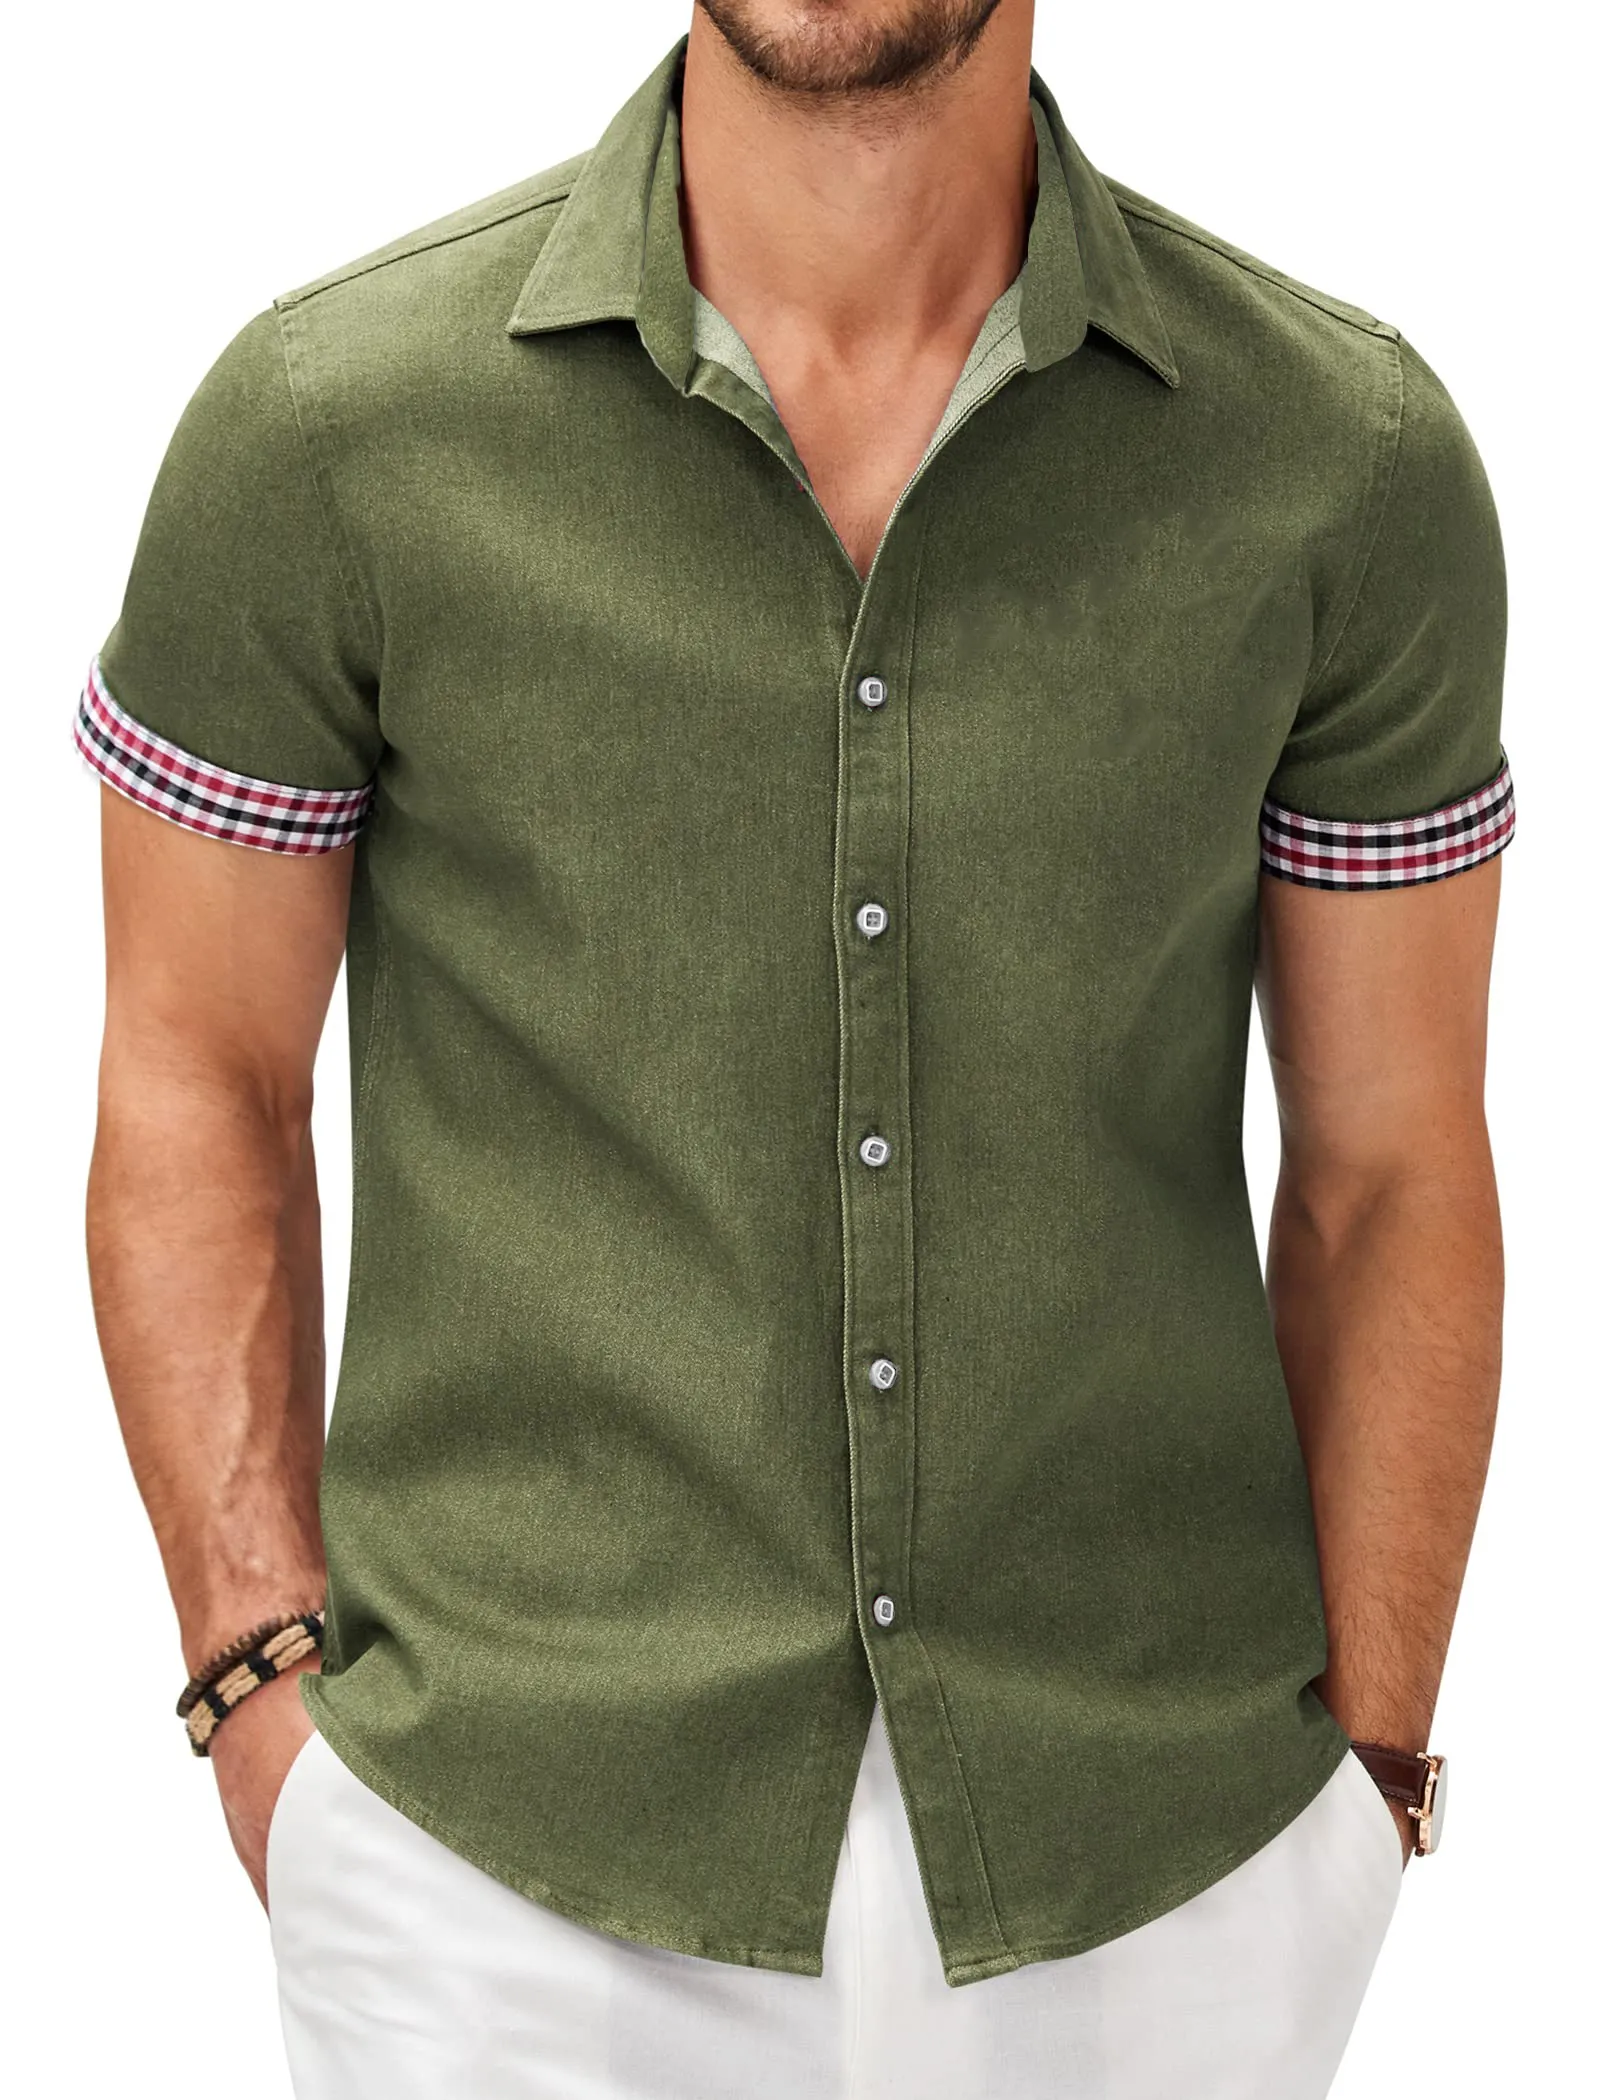 Men's Fashion Plaid Linen Patchwork Short Sleeve Shirt PLUSCLOTHESMAN